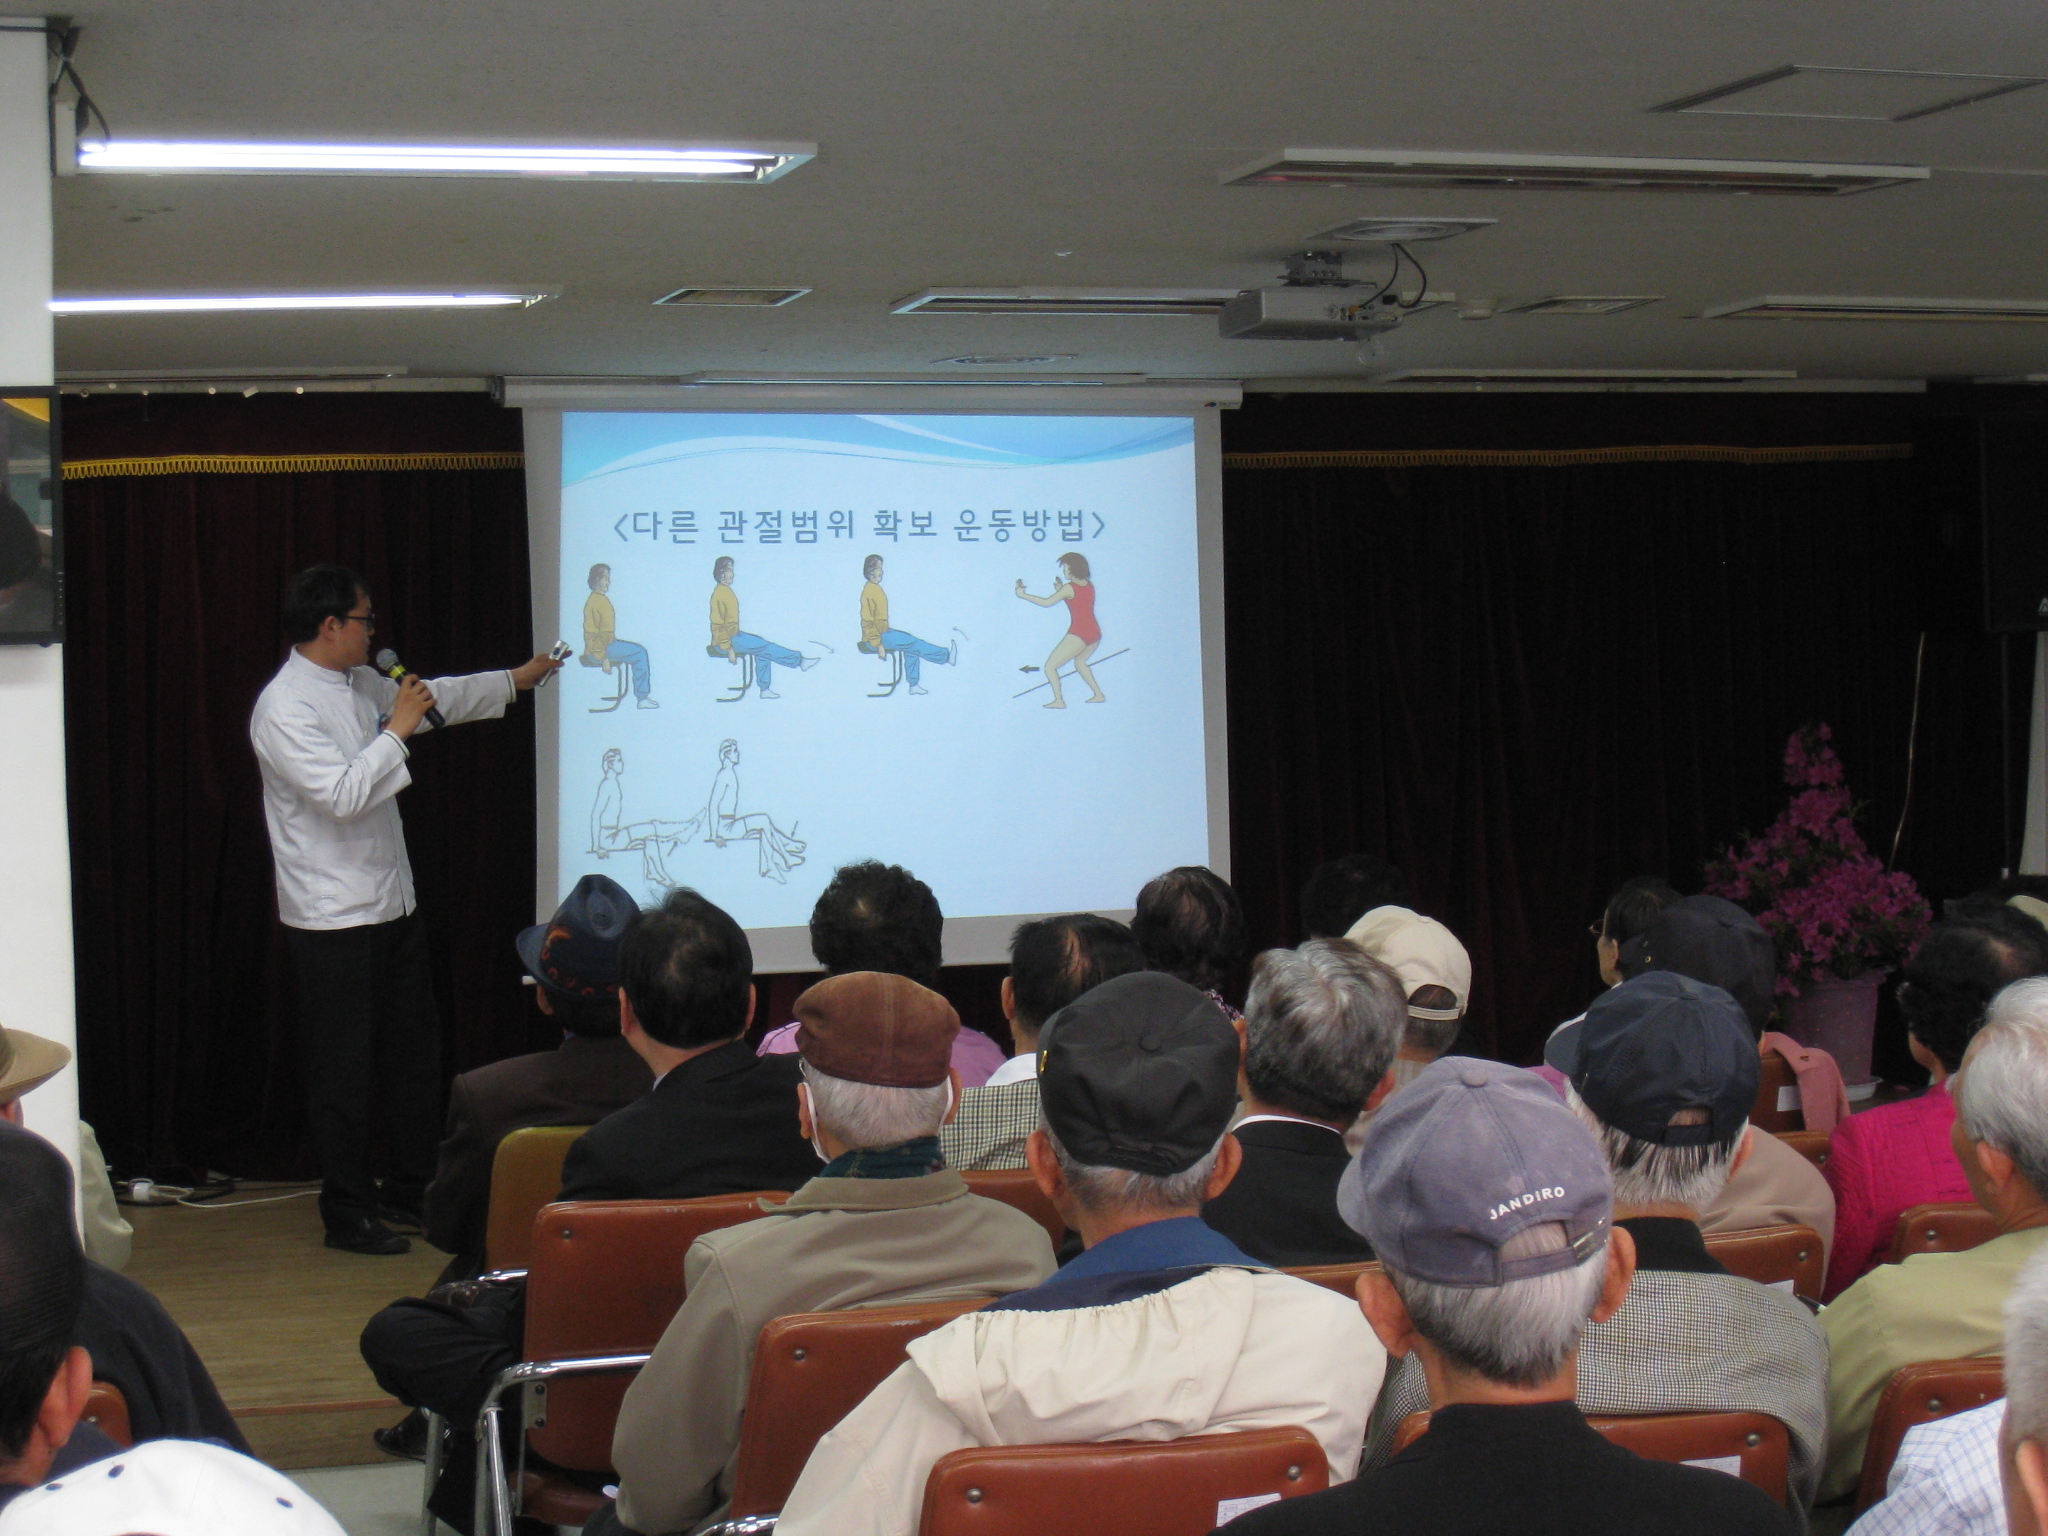 [2011년 5월] 서울노인복지센터 `찾아가는 건강강좌` 게시글의 3번째 첨부파일입니다.